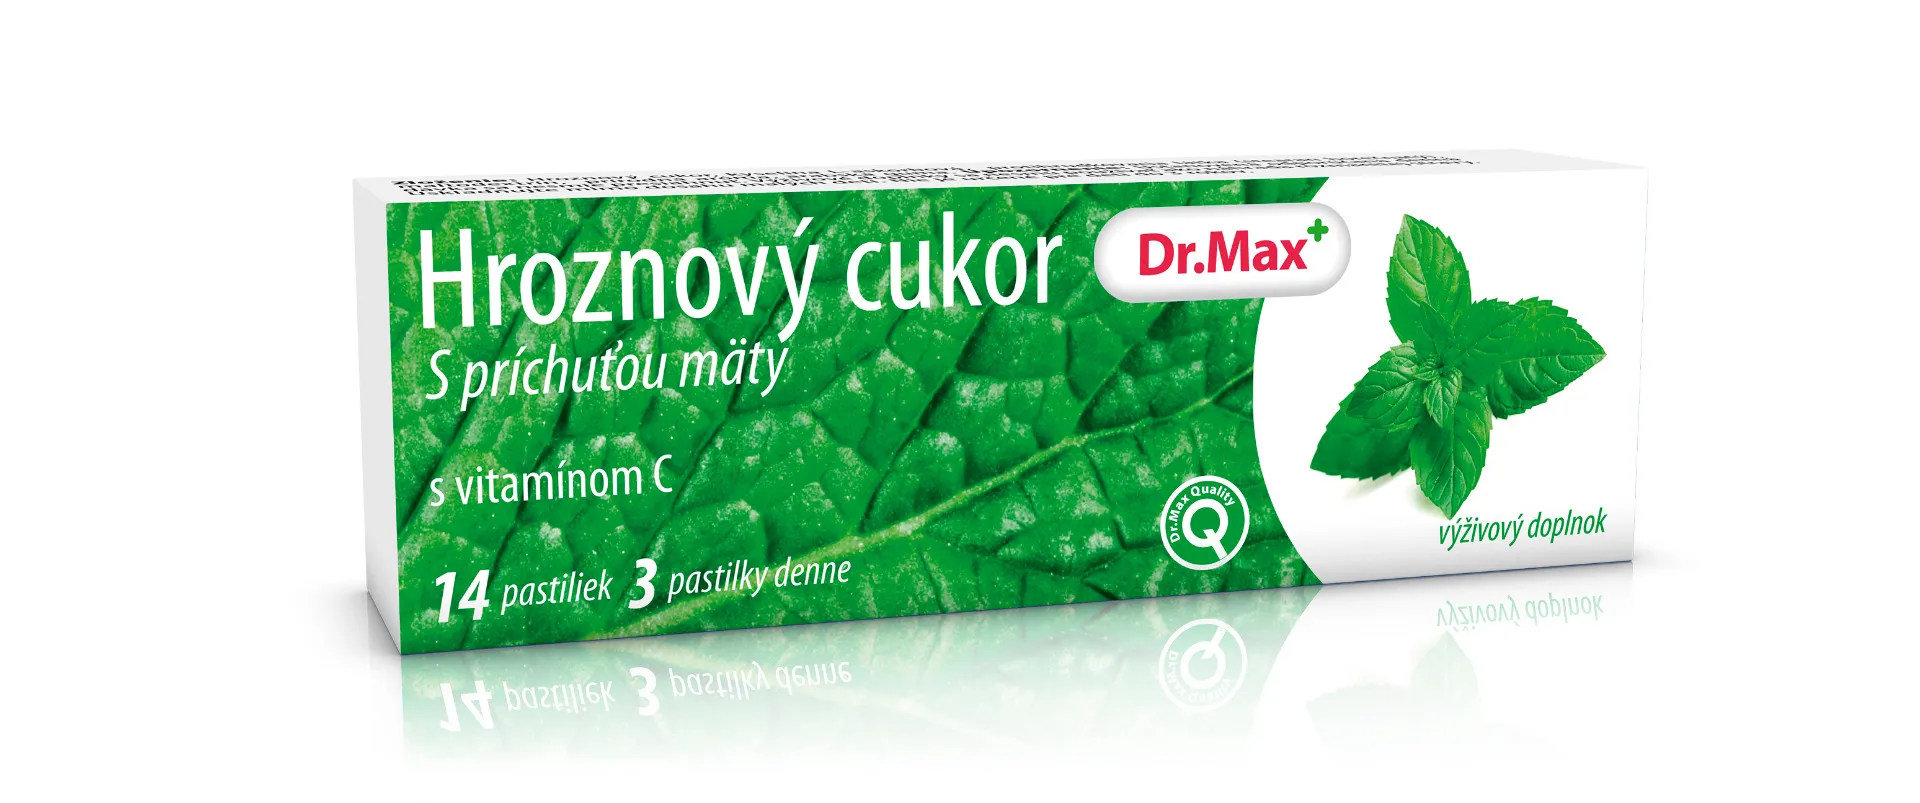 Dr.Max Hroznový cukor s vitamínom C